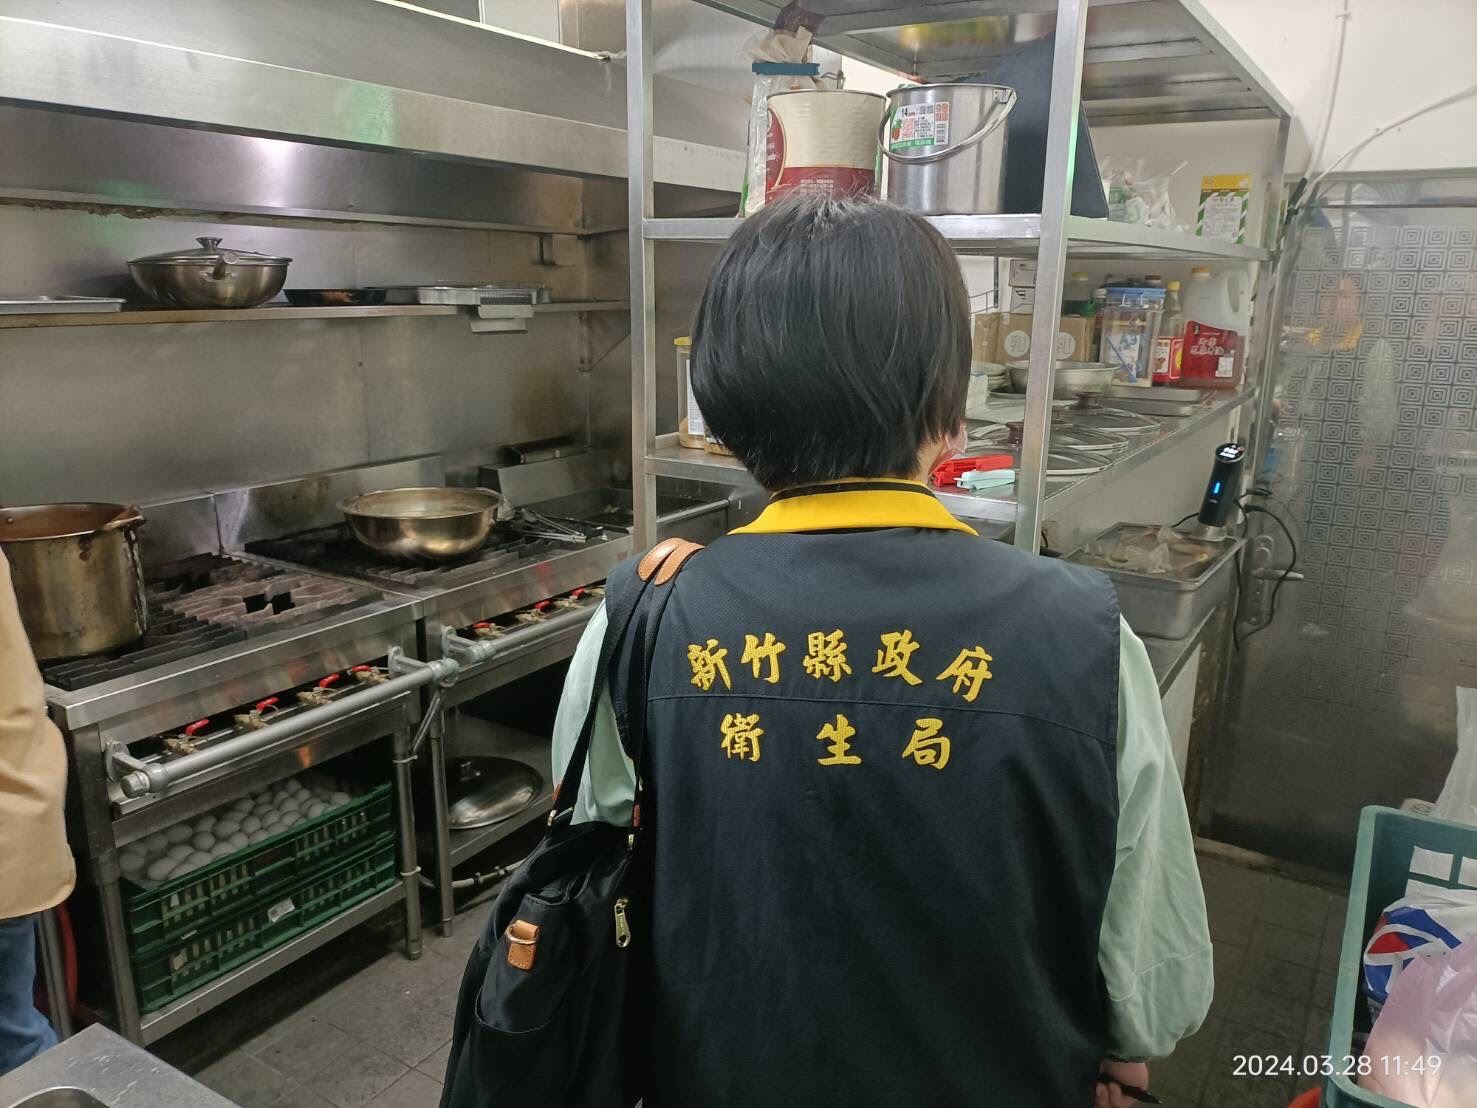 新竹县竹北市某餐厅也爆出民众用餐后腹泻、身体不适，卫生局昨天至店家稽查。图／新竹县政府提供